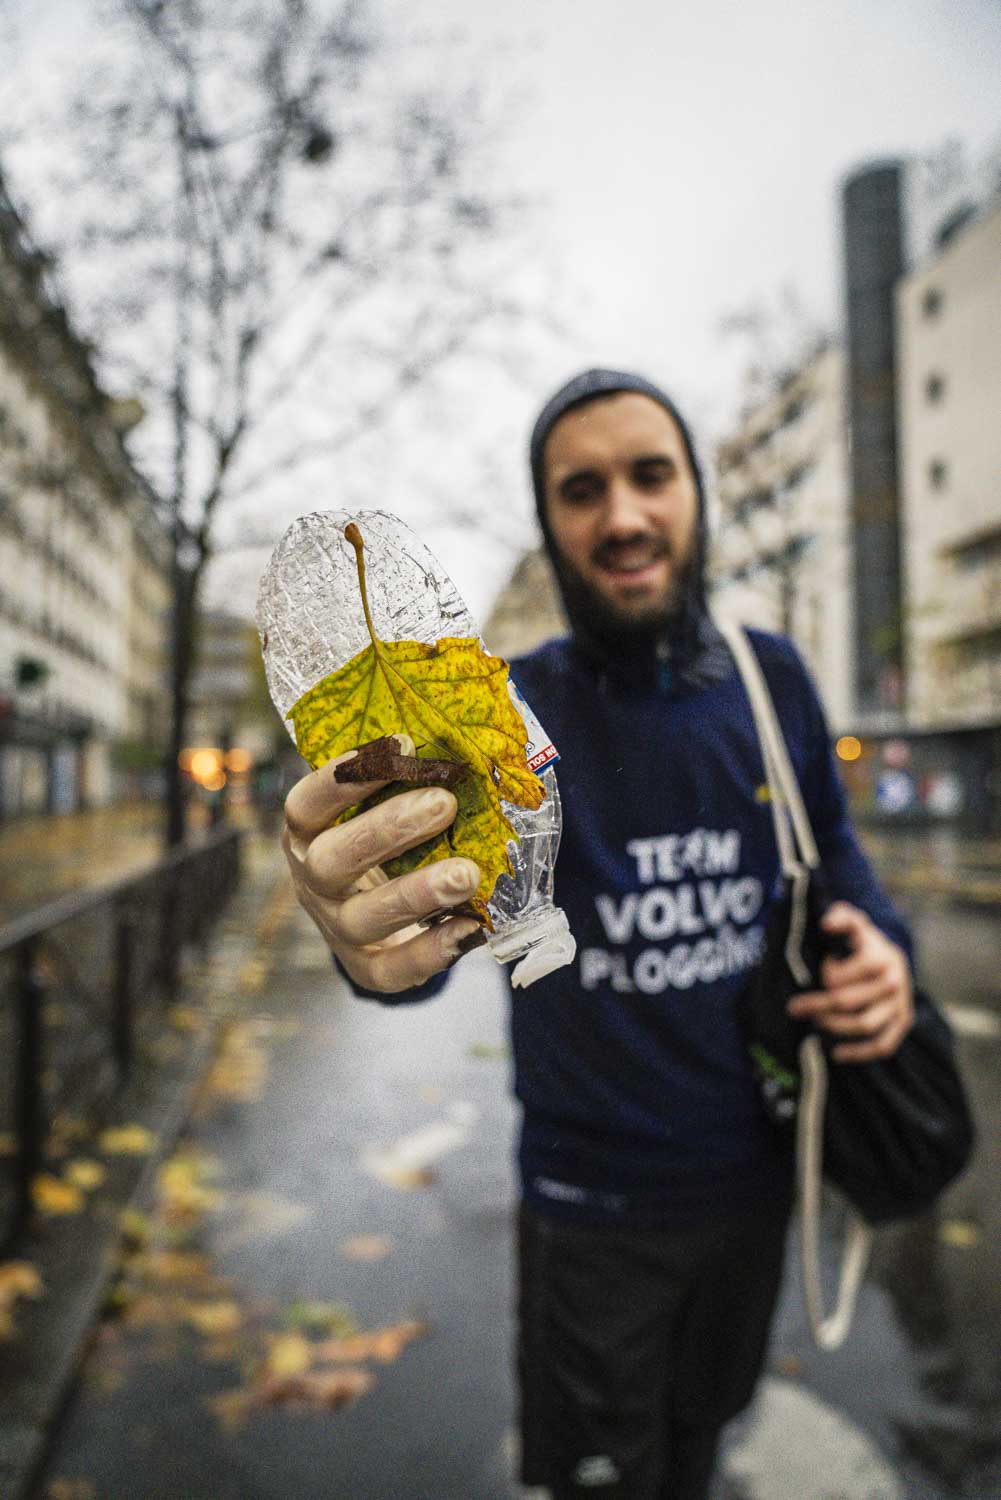 photographe running paris brand content nicolas jacquemin photo volvo plogging